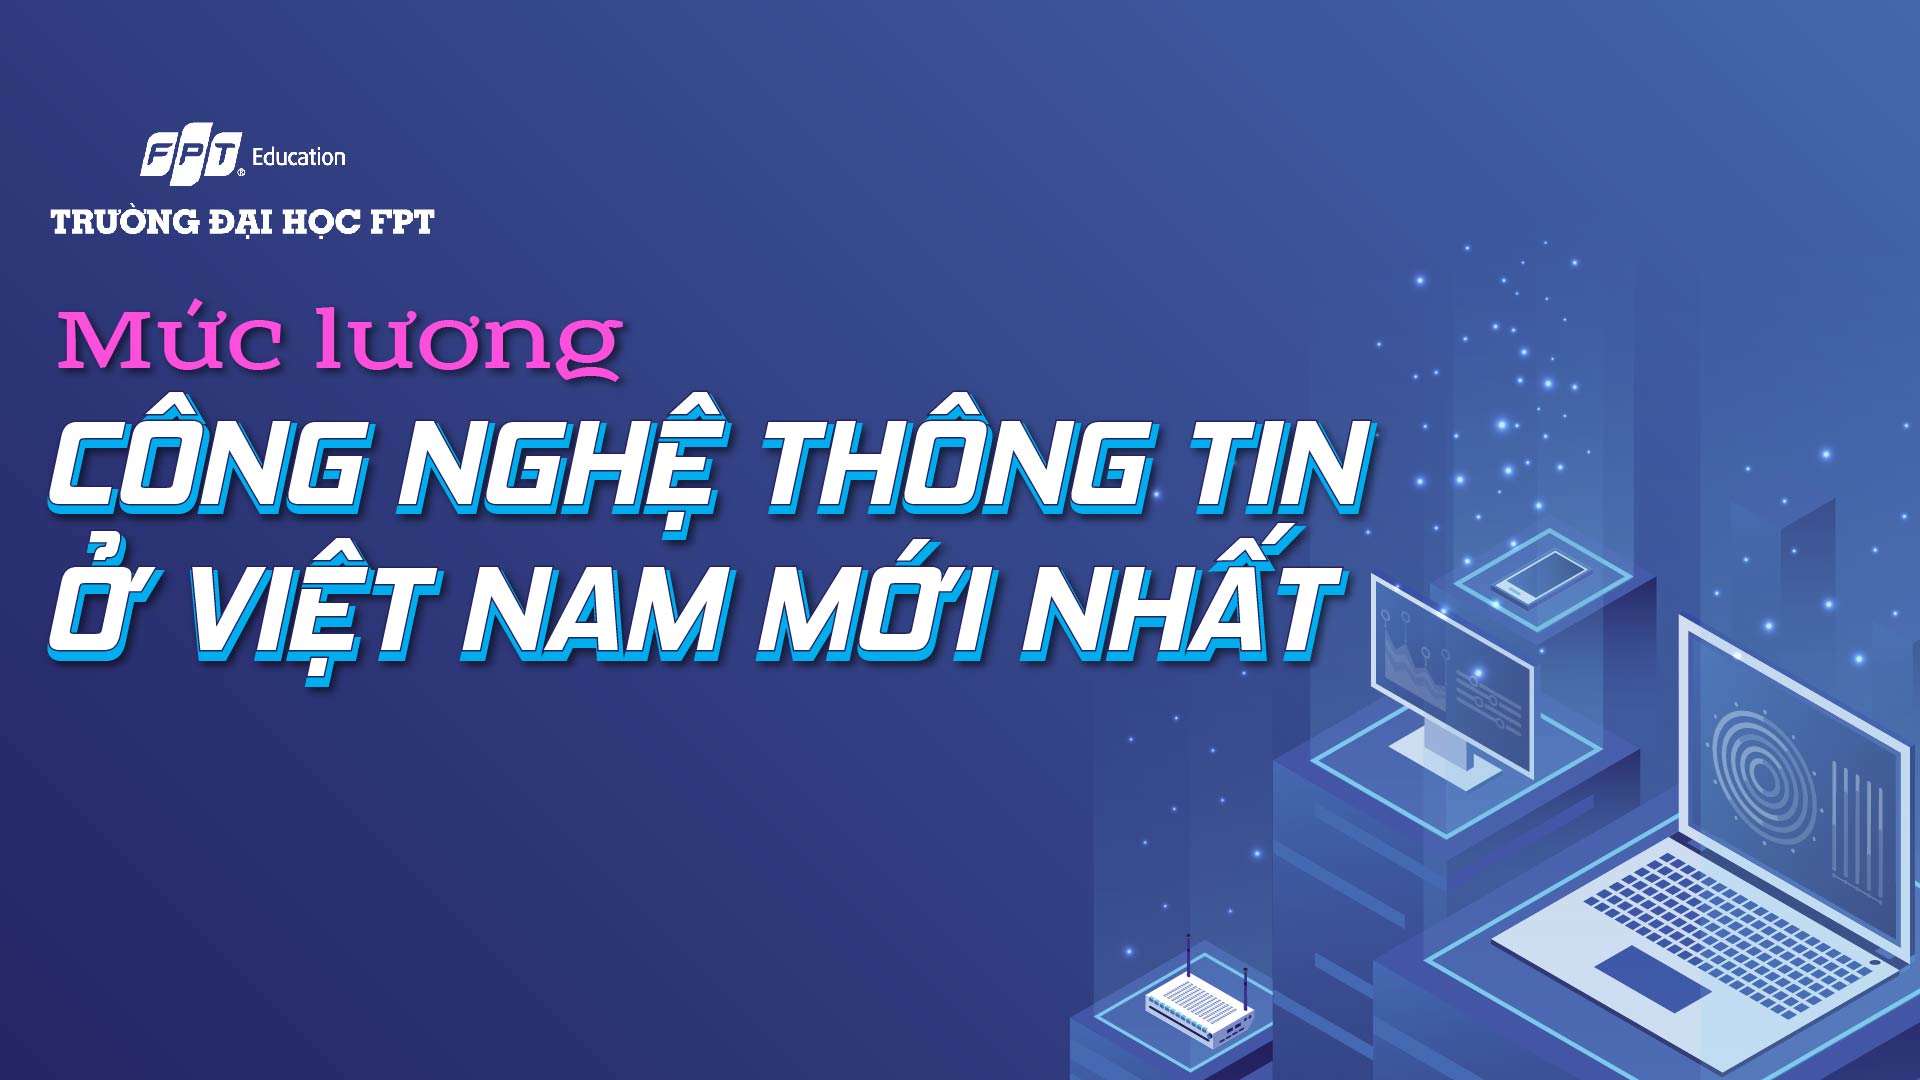 Mức lương Công nghệ thông tin ở Việt Nam mới nhất